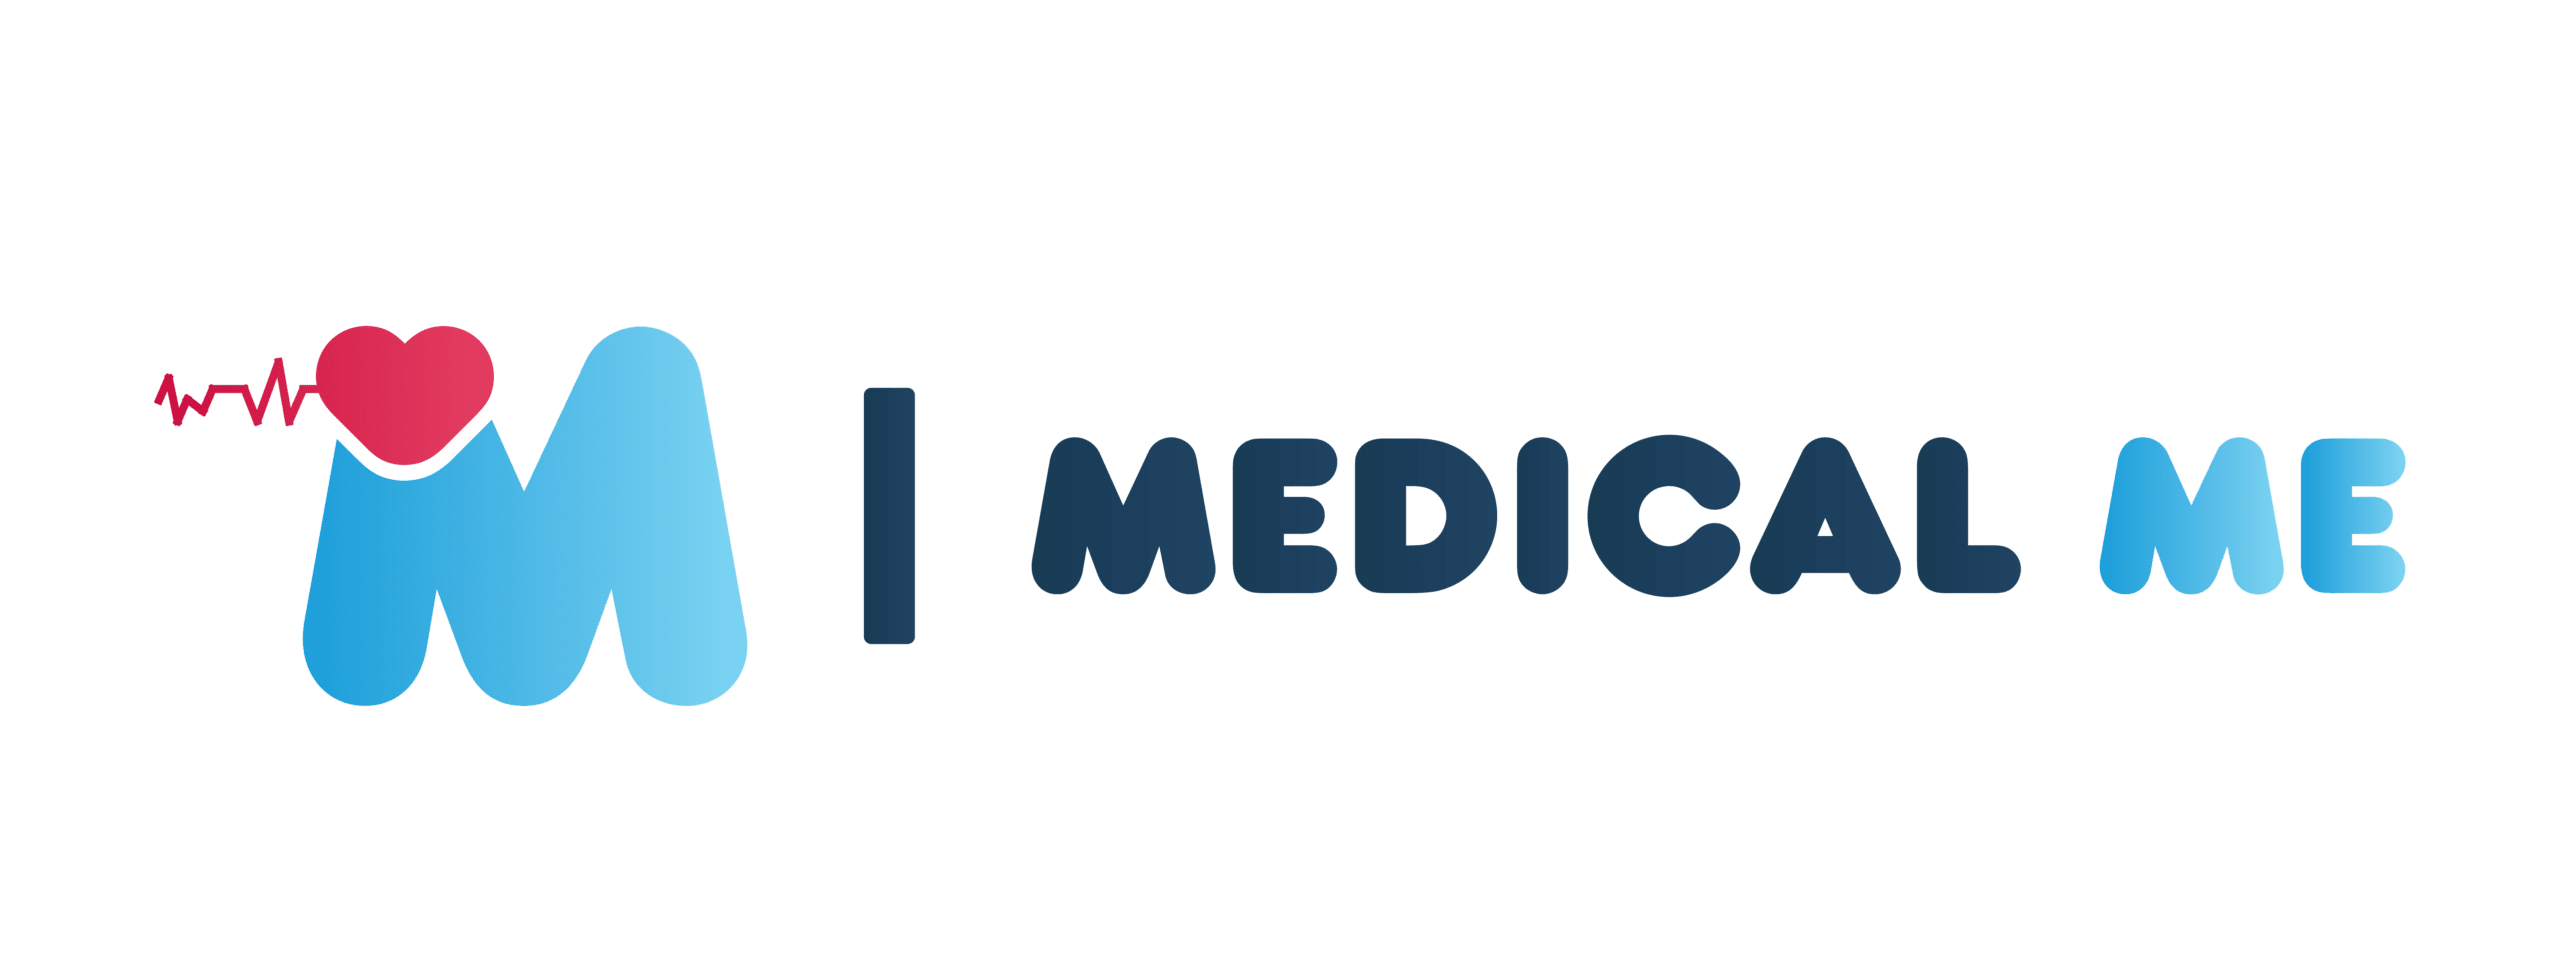 medical me logo 1